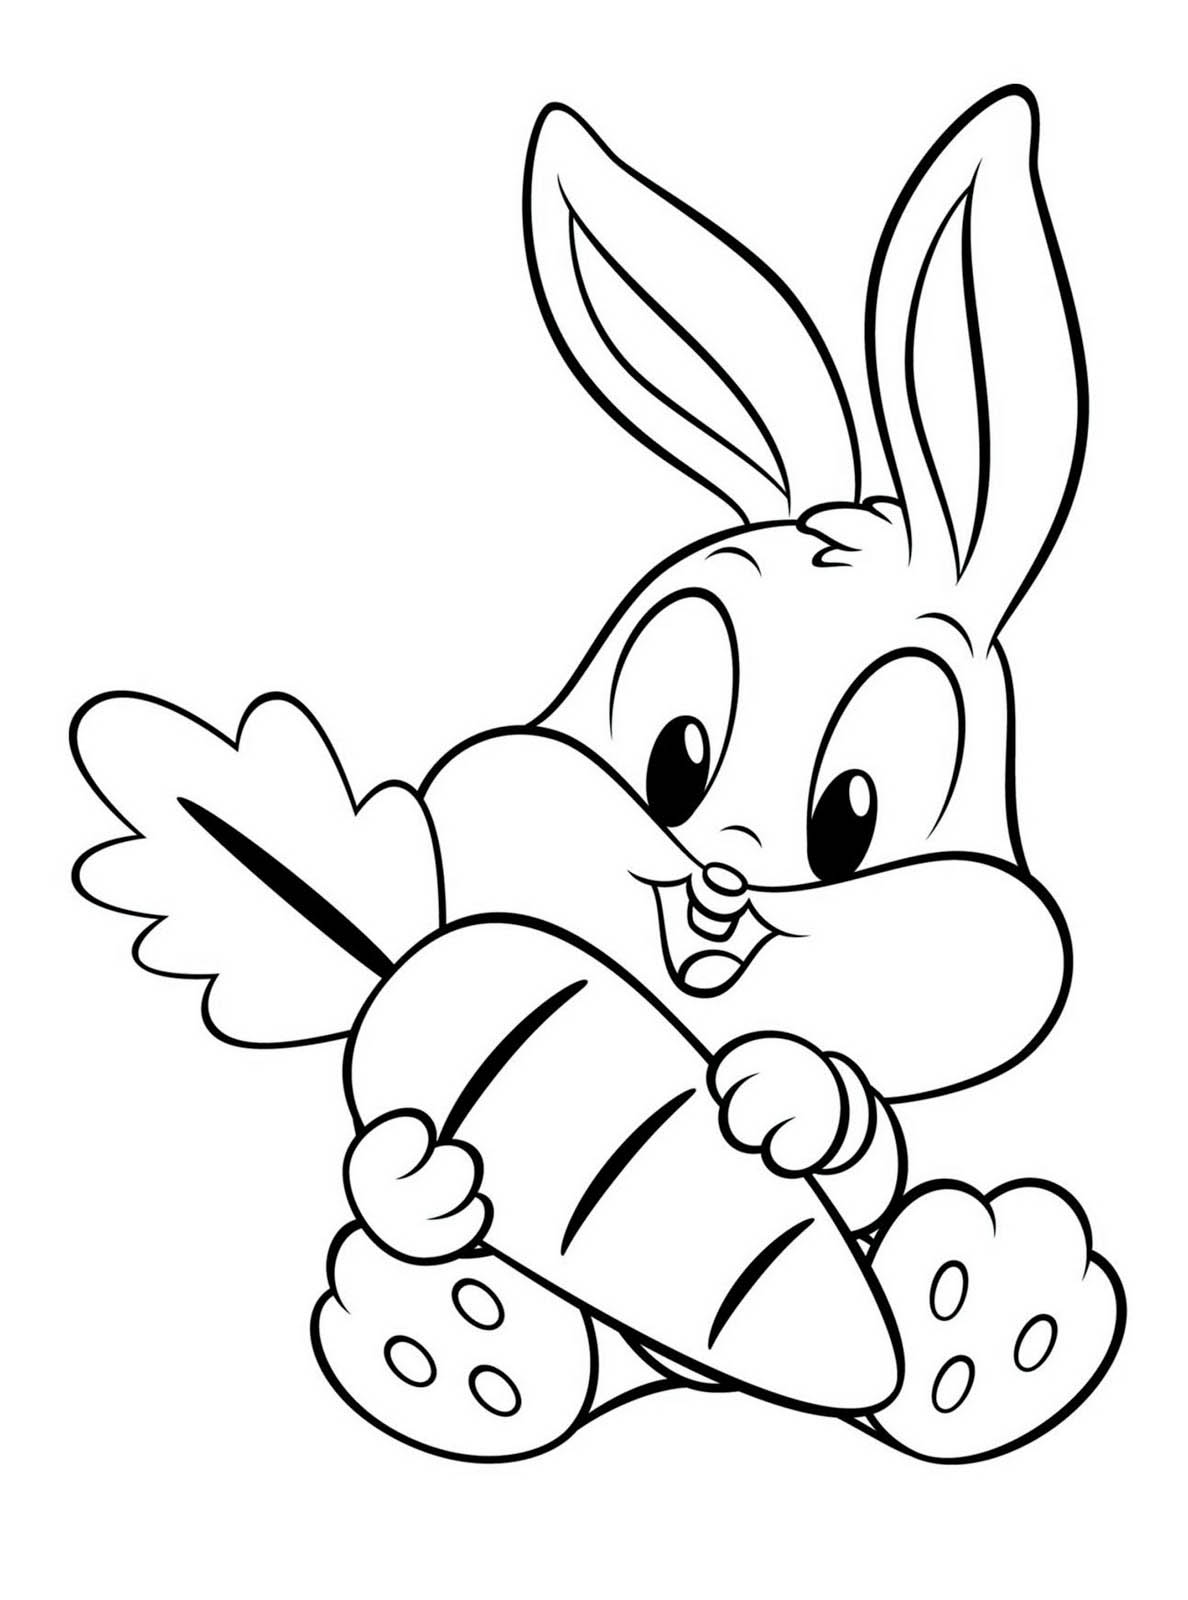 Tranh tô màu con thỏ hoạt hình